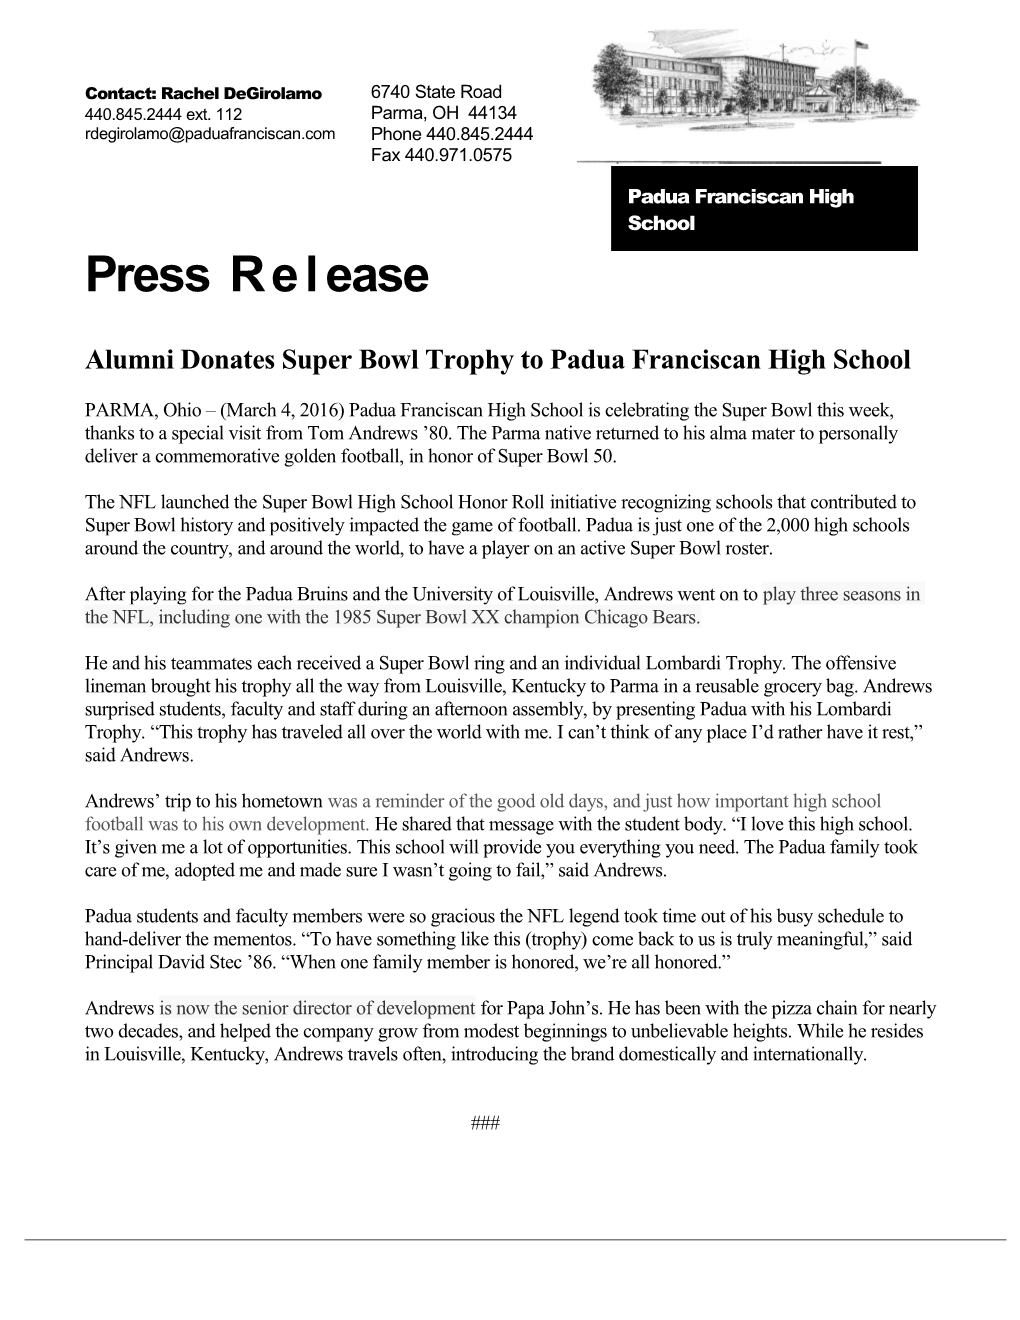 Alumni Donates Super Bowl Trophy to Padua Franciscan High School